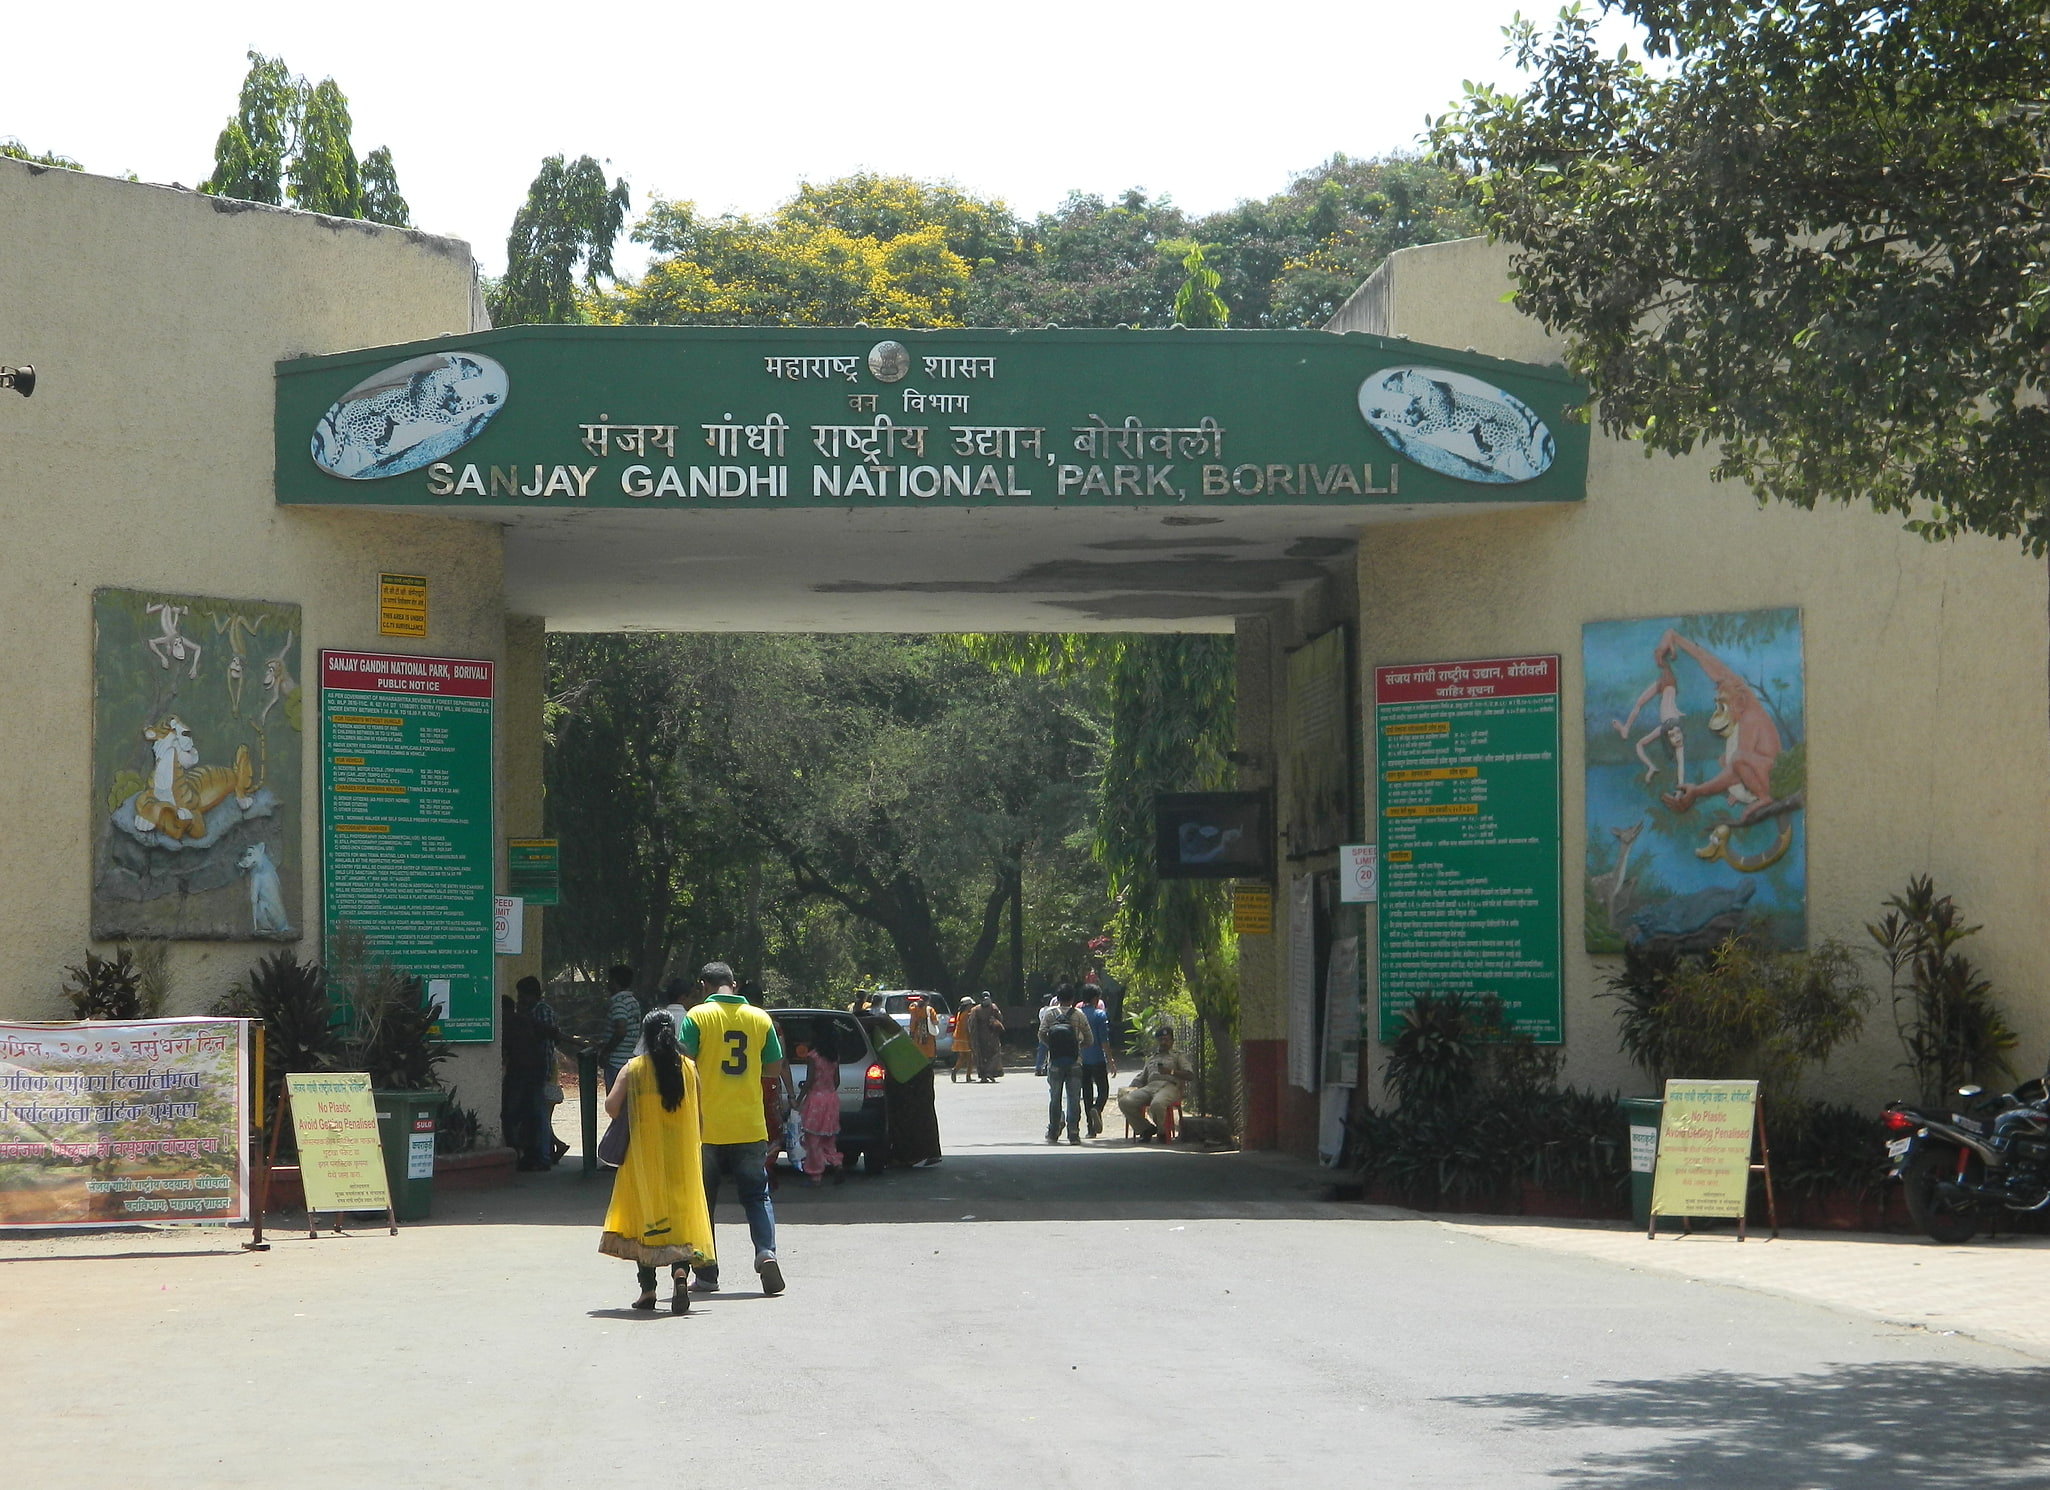 Sanjay Gandhi National Park, Mumbai: Tips and Information